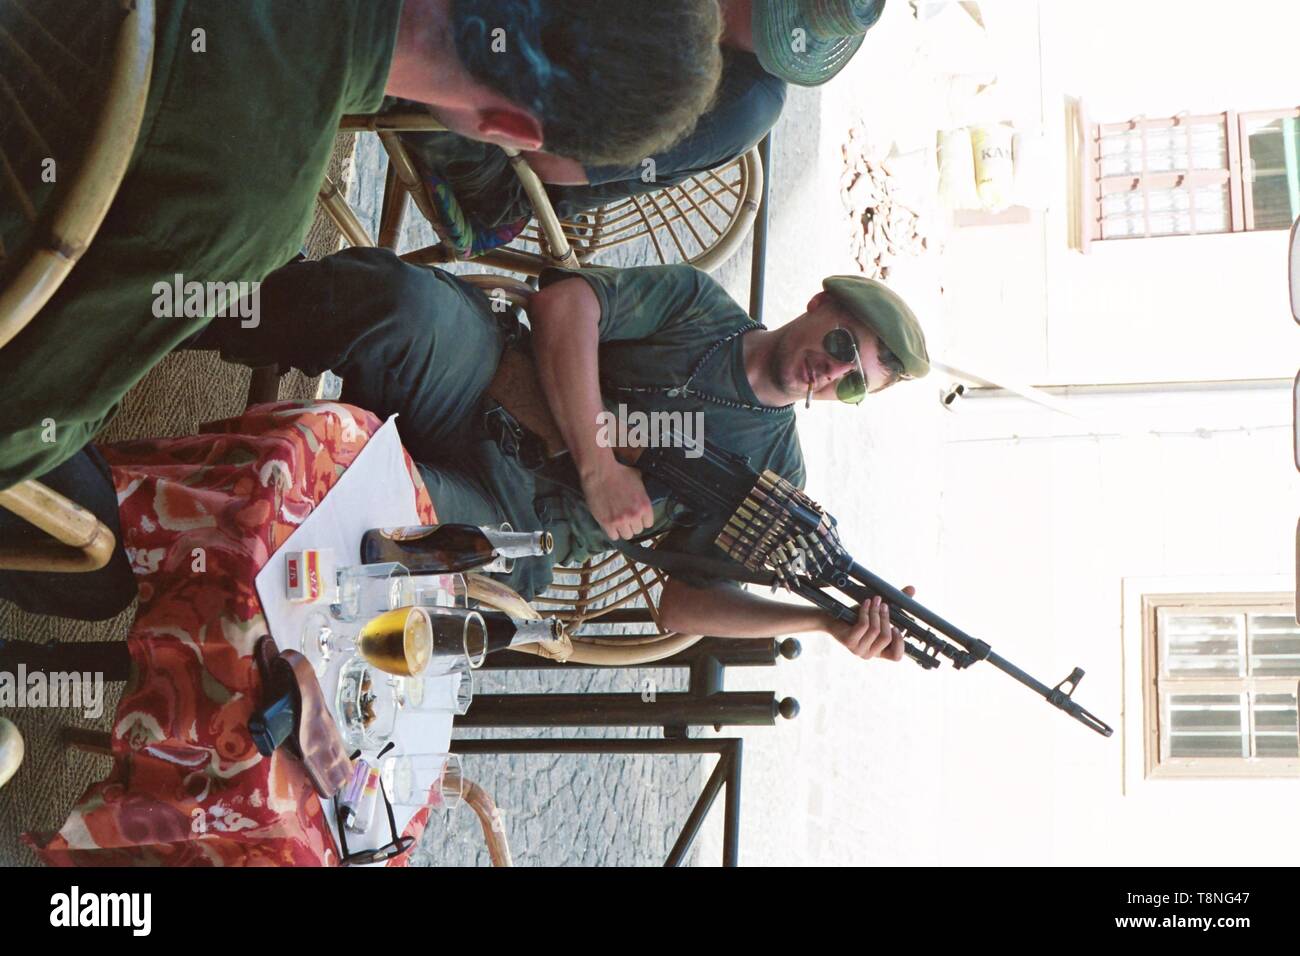 Ein kroatischer Soldaten wirft mit einem schweren Maschinengewehr in einem Cafe in der kroatischen Hauptstadt Zagreb im ehemaligen Jugoslawien während des Konflikts in den Jahren 1991-92. Bild von Adam Alexander Stockfoto